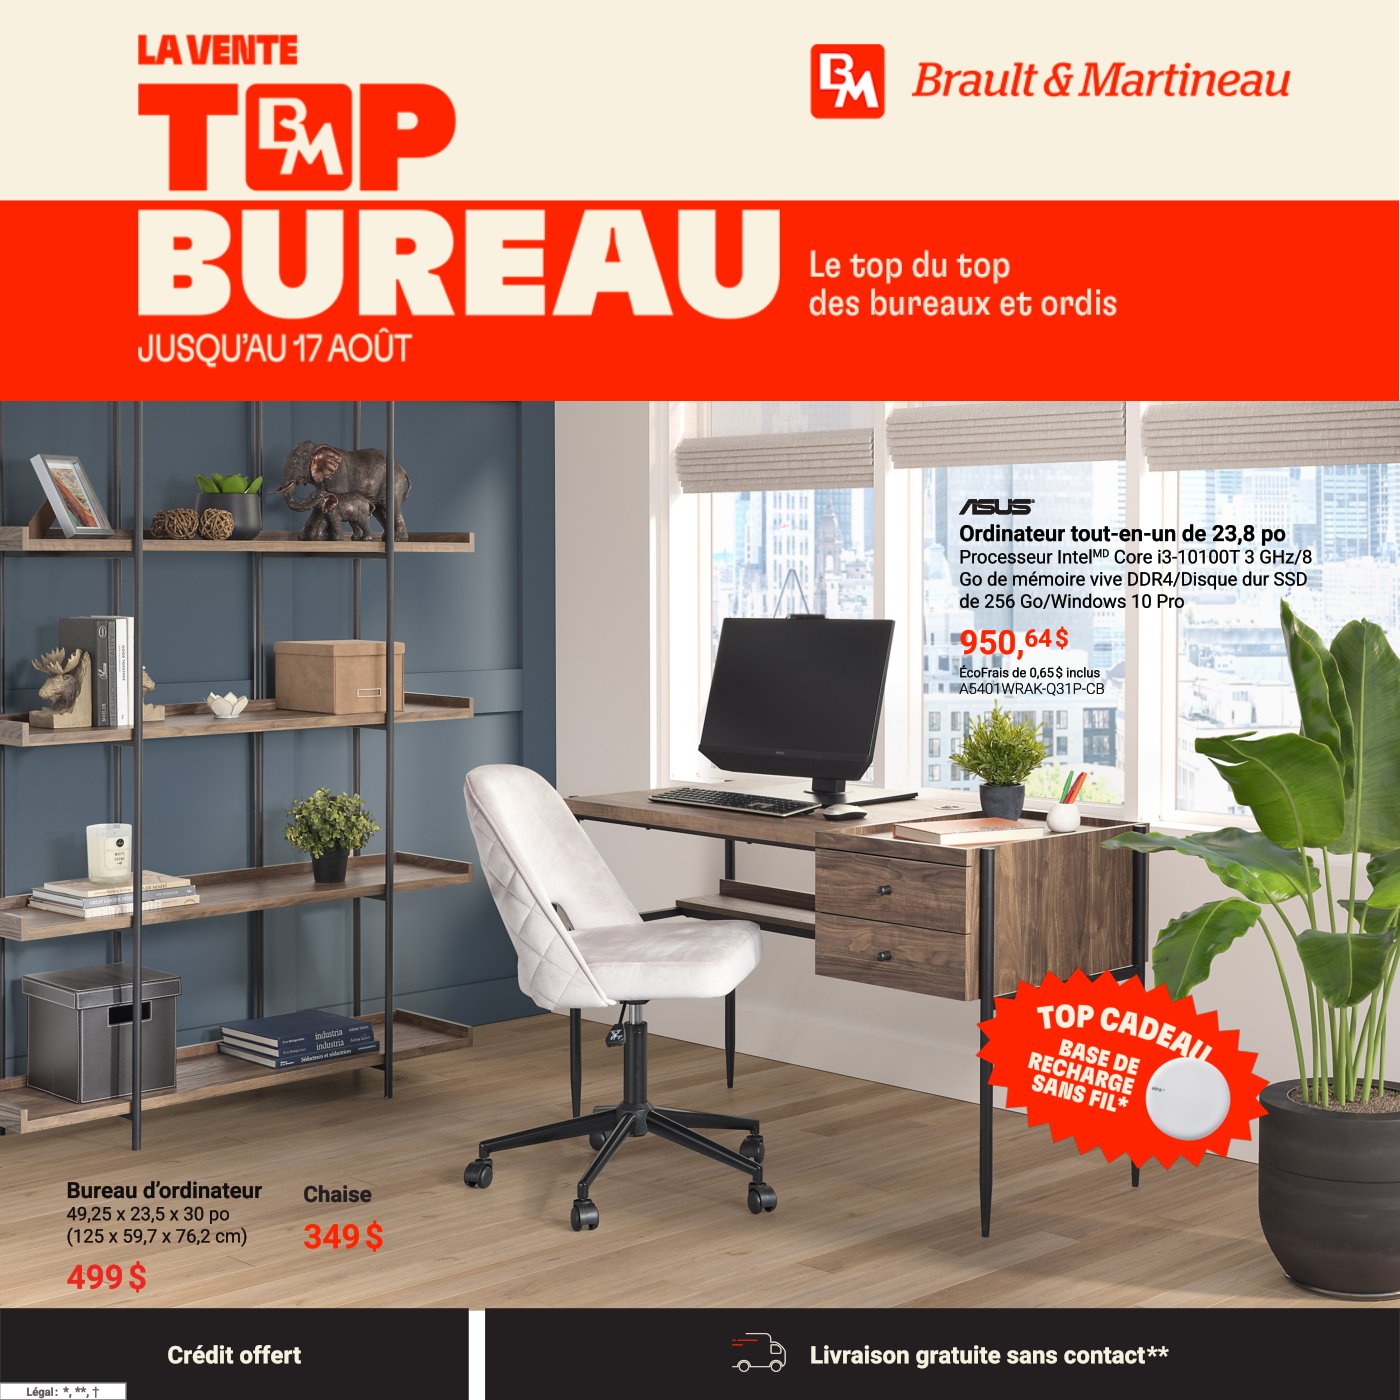 Circulaire Brault et Martineau - Bureau - Page 1